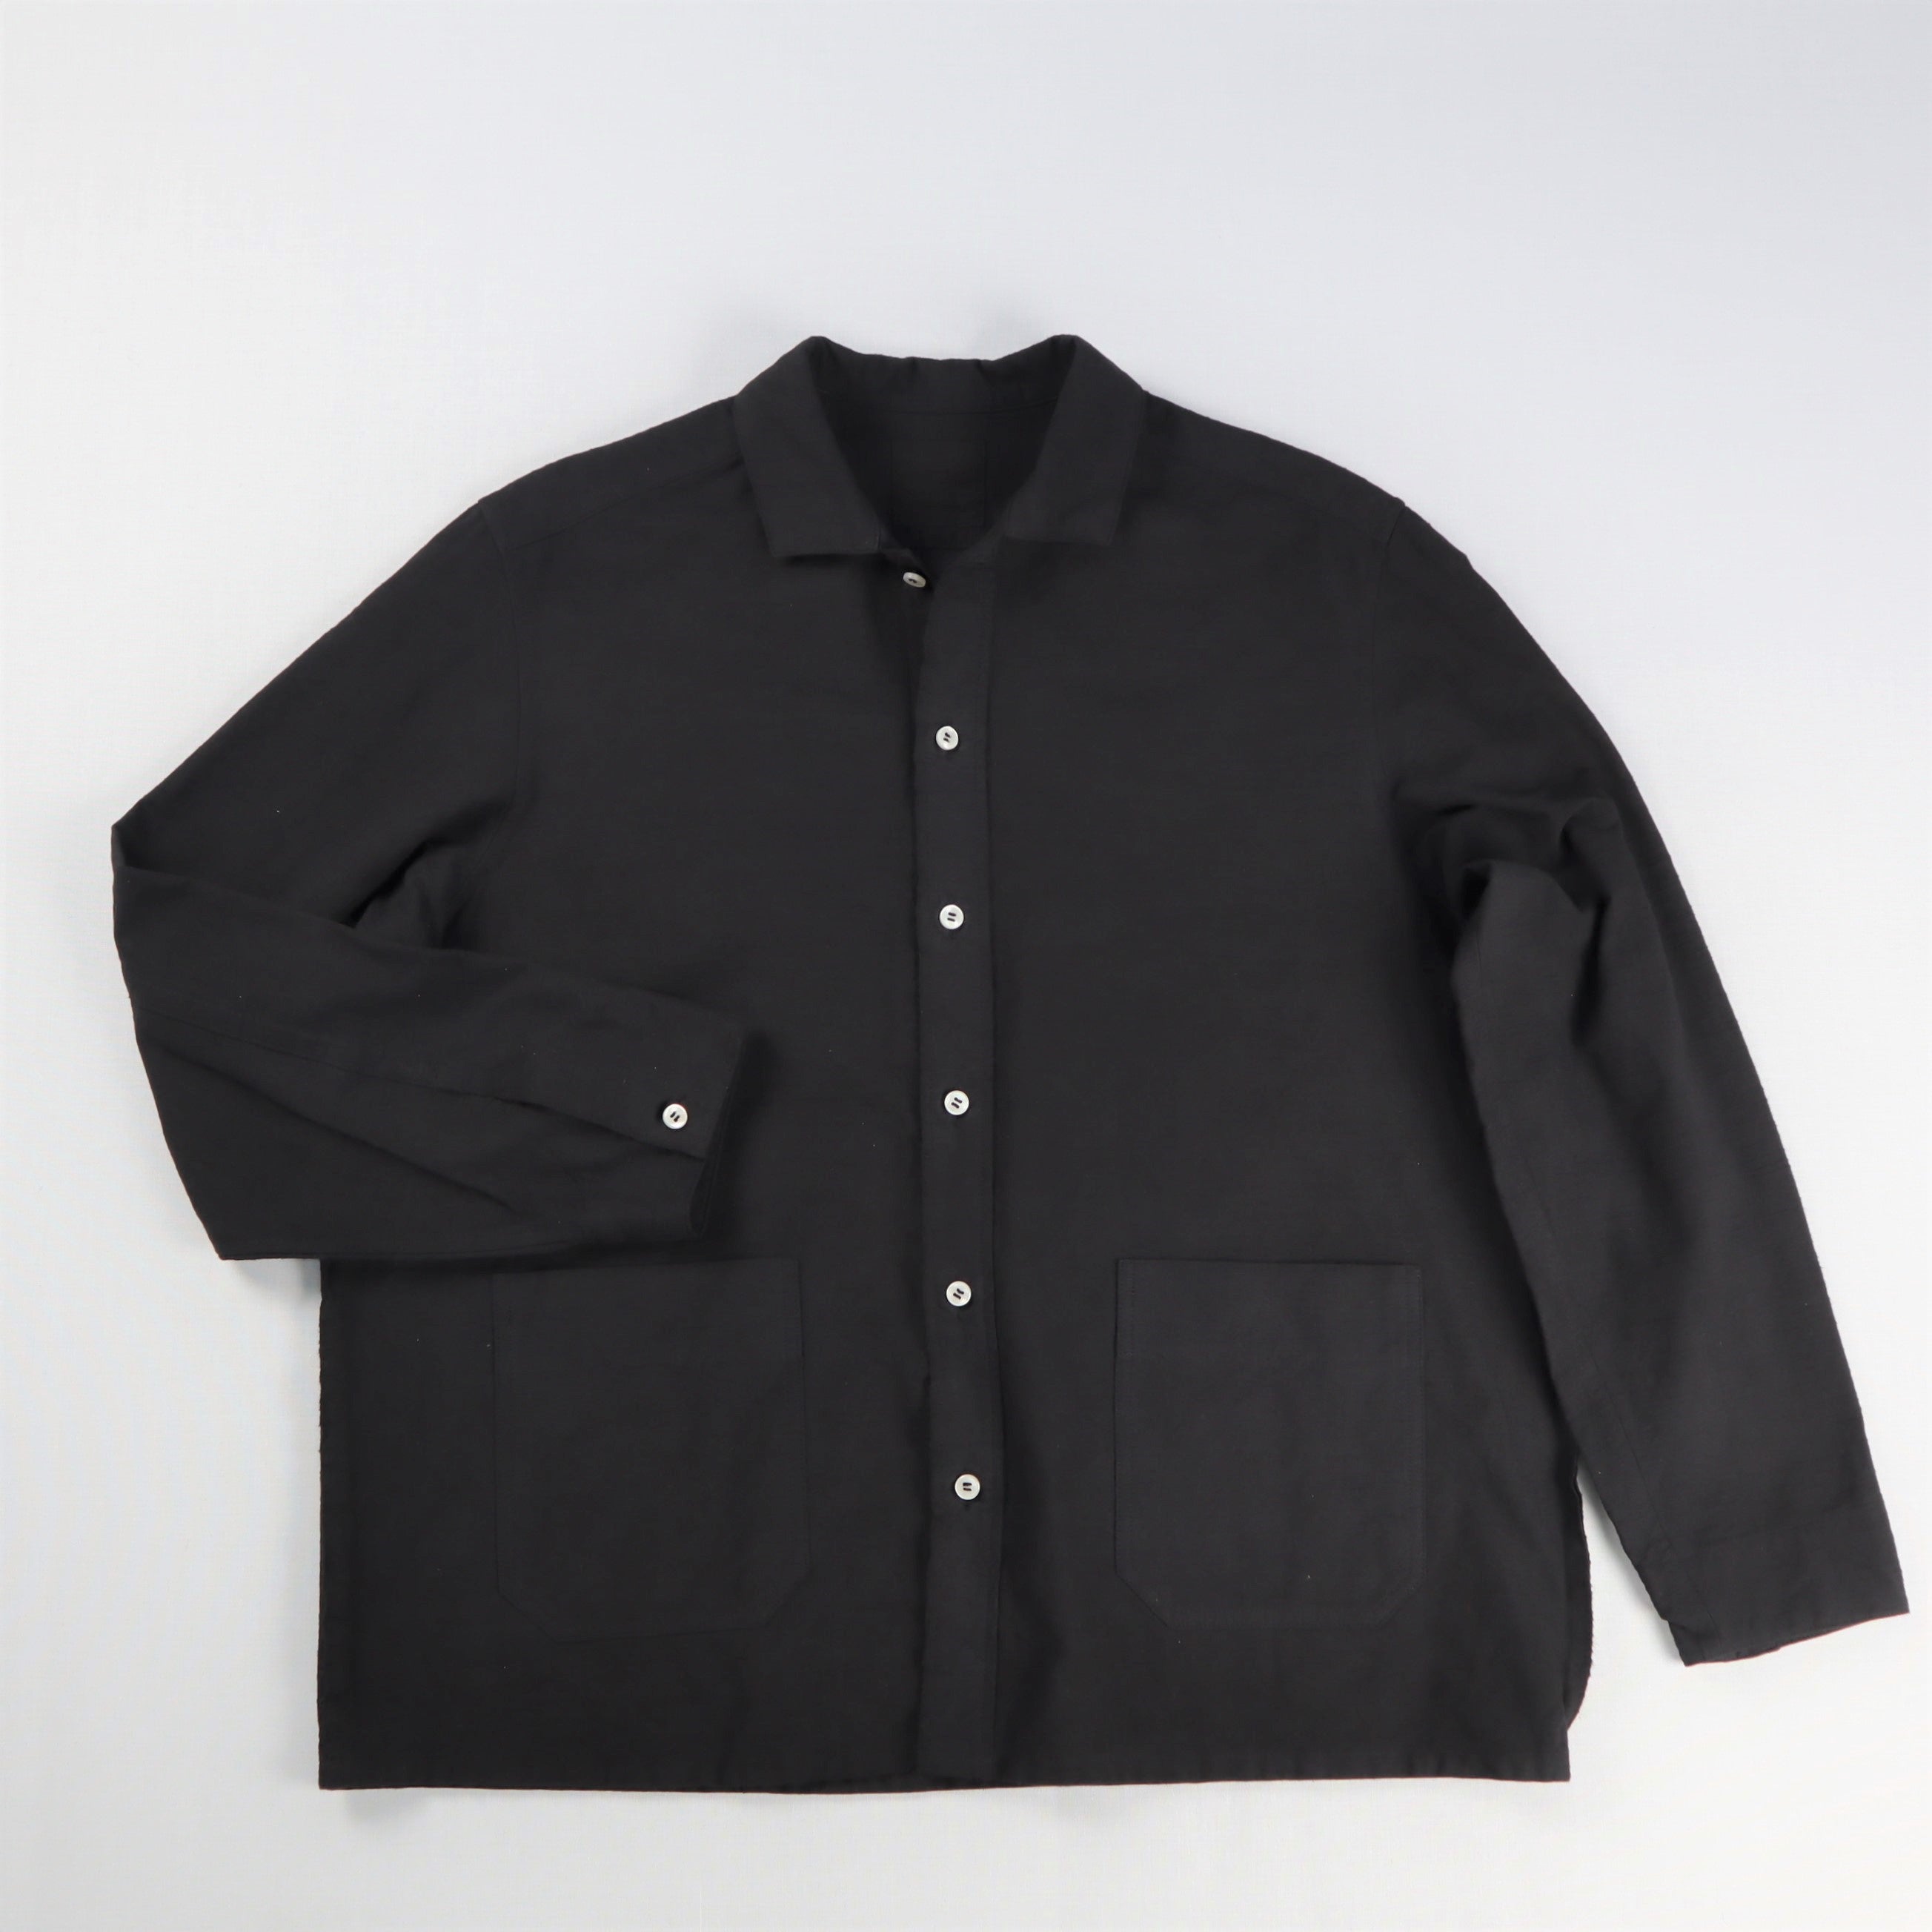 知多木綿 黒染め オープンカラーシャツジャケット カバーオール